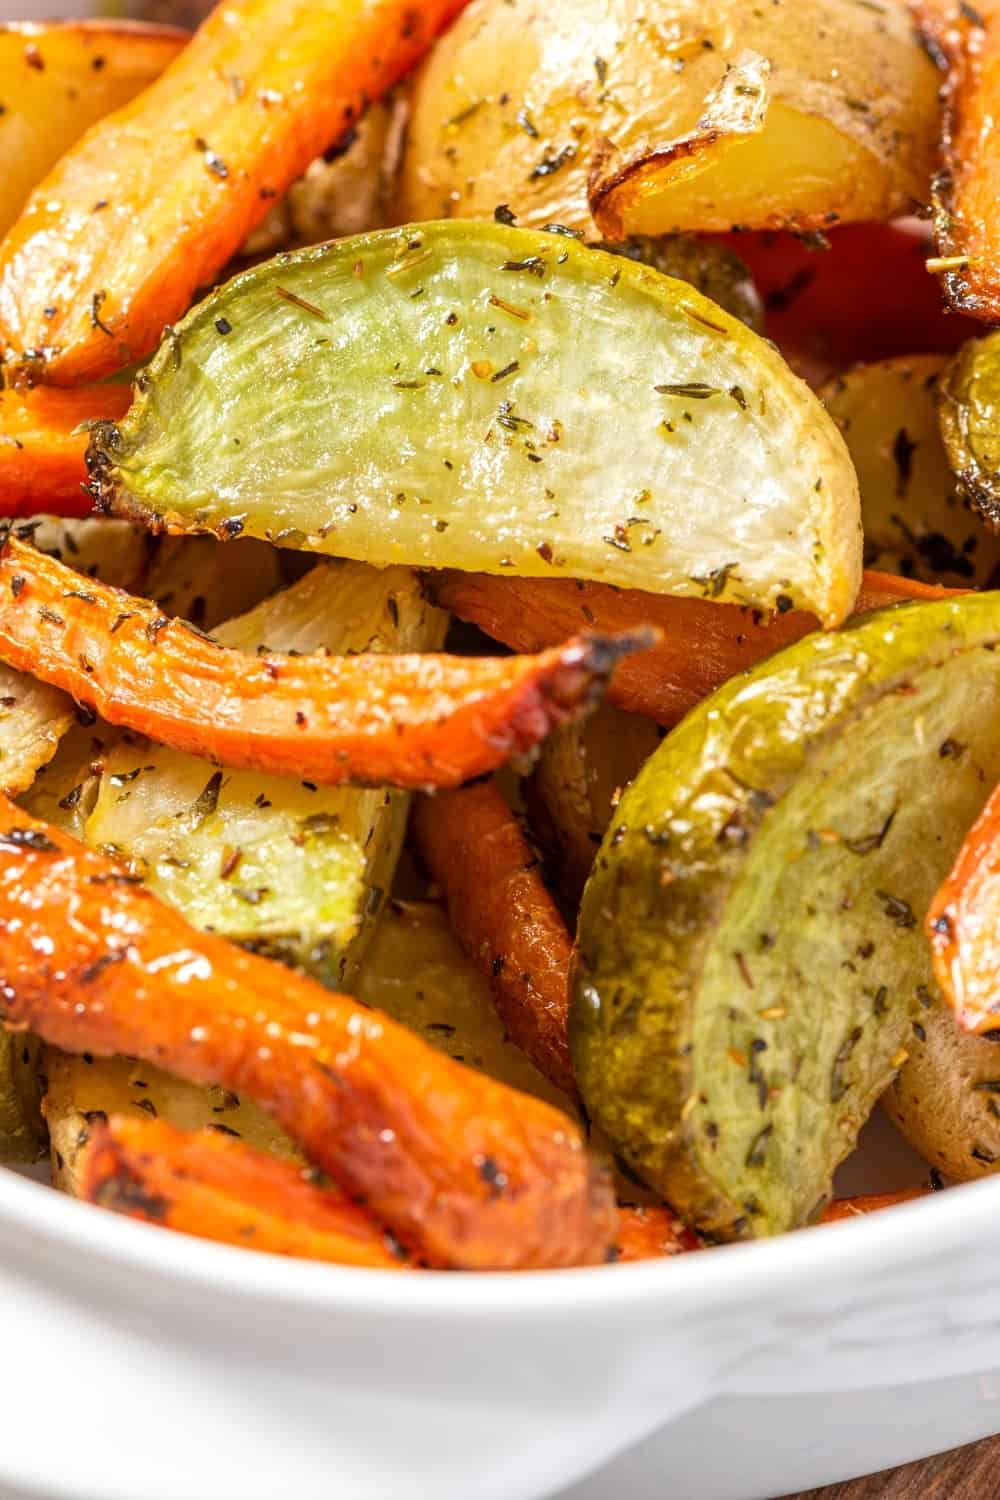 Primer plano de verduras al horno en una fuente blanca. Patatas, zanahorias y nabos fritos con aceite de oliva